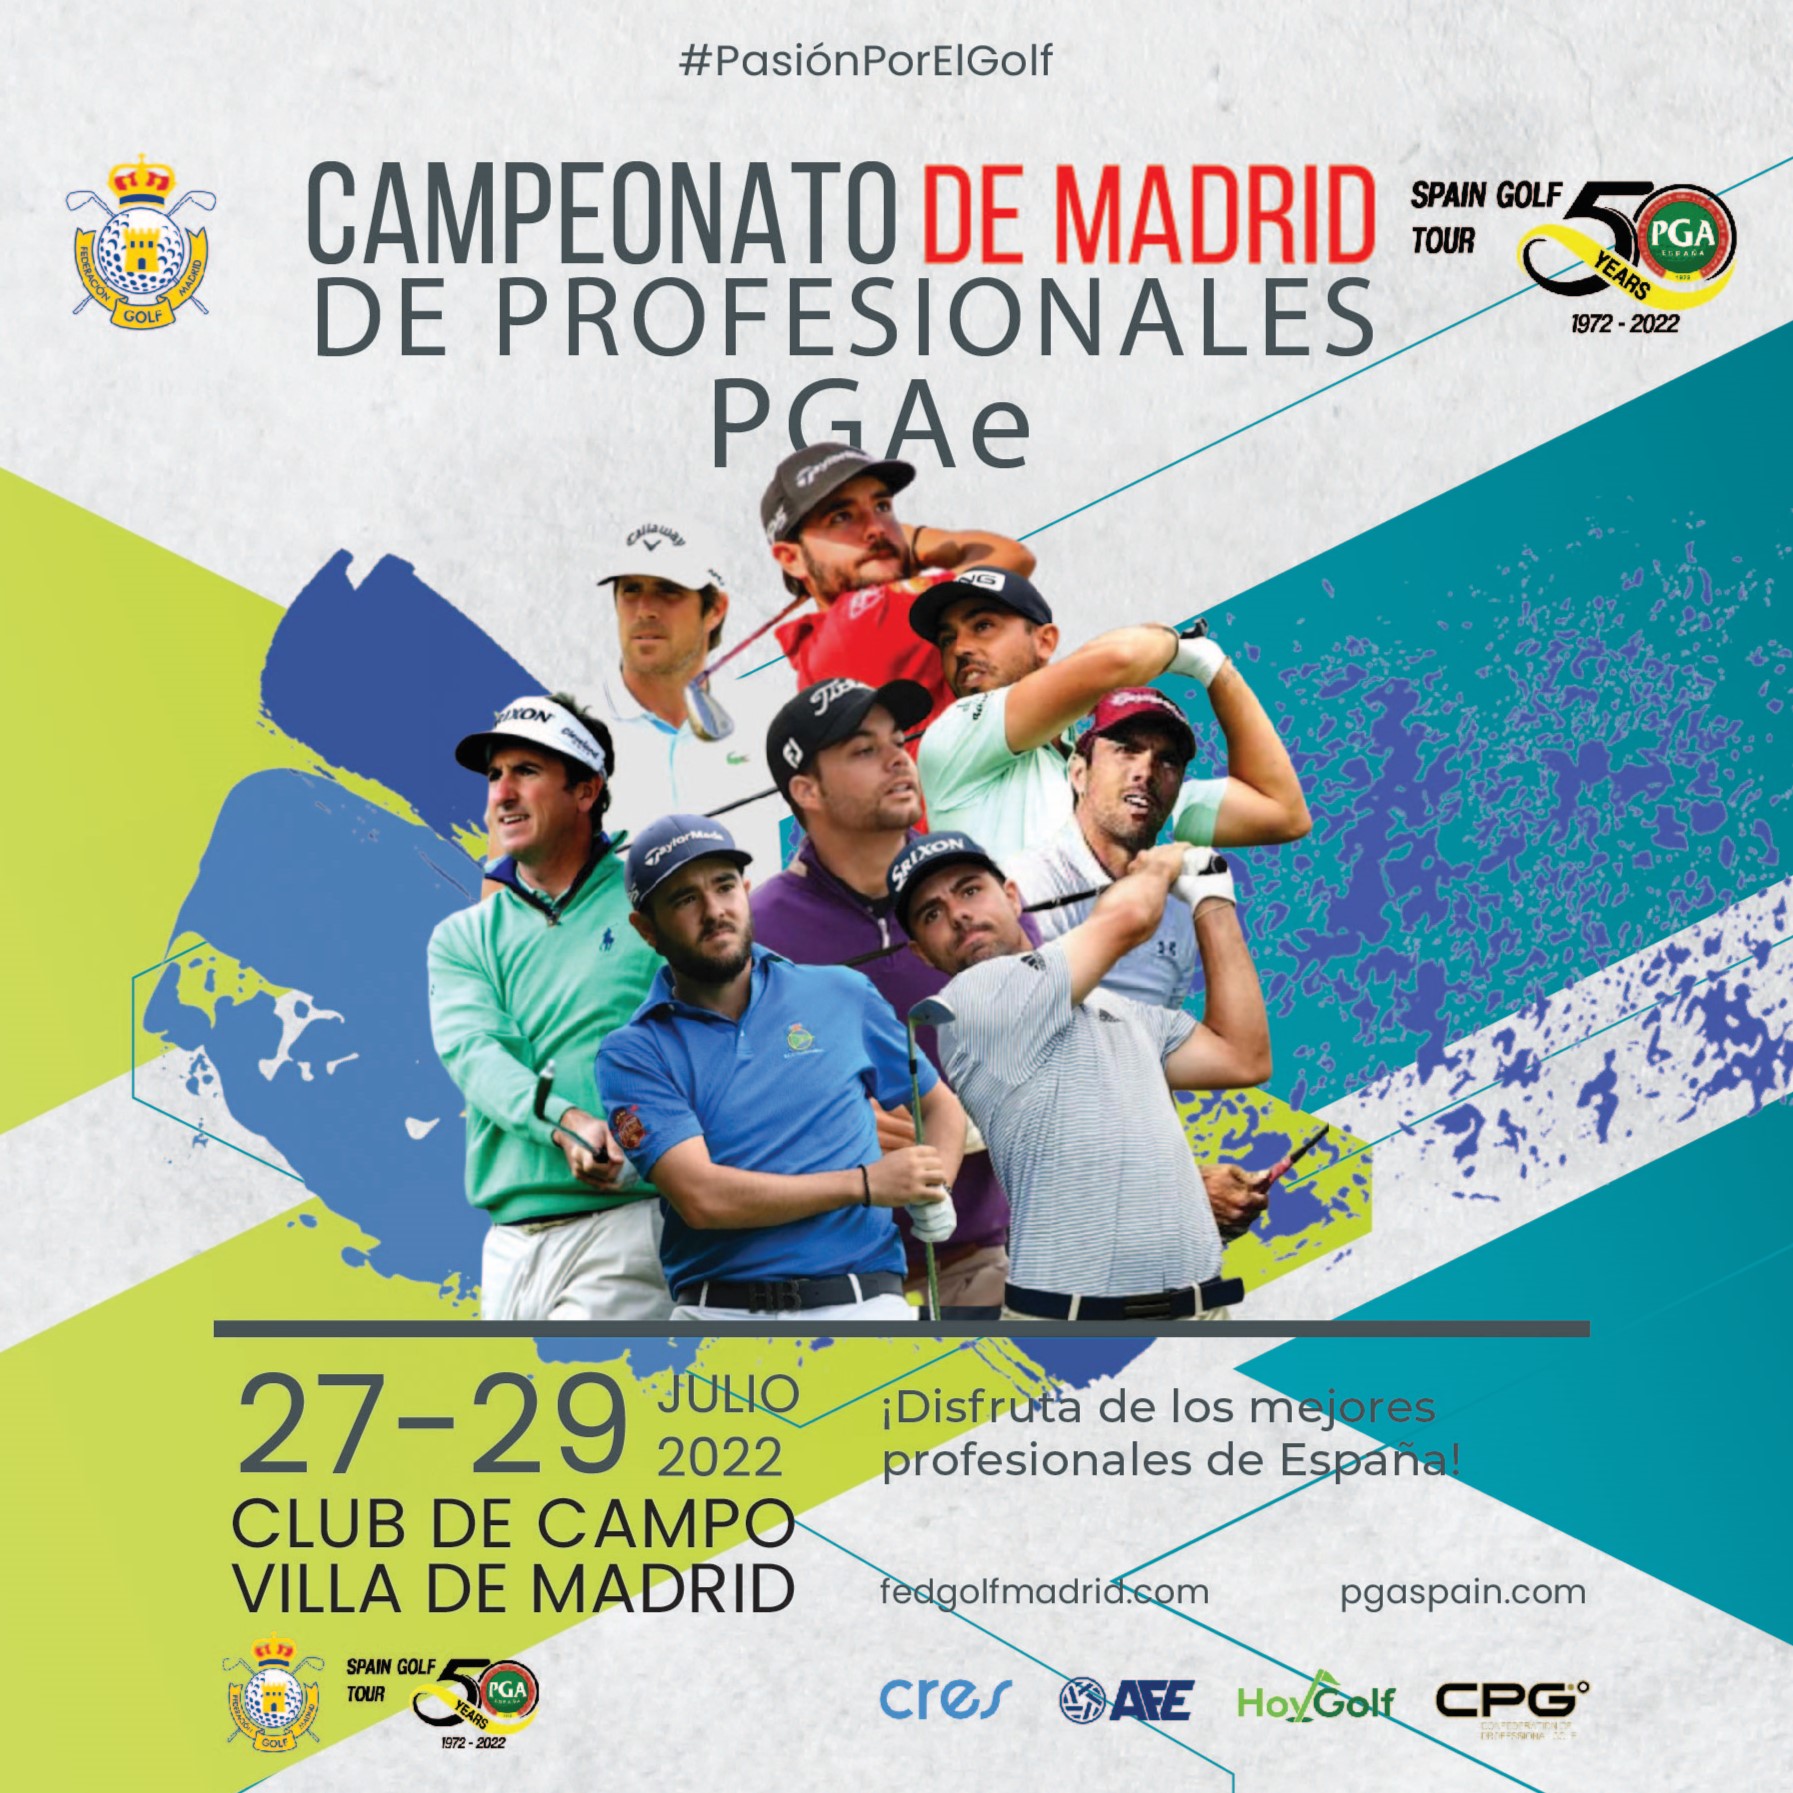 Disfruta del mayor Campeonato de Madrid de Profesionales de la Historia -  Federación de Golf de Madrid